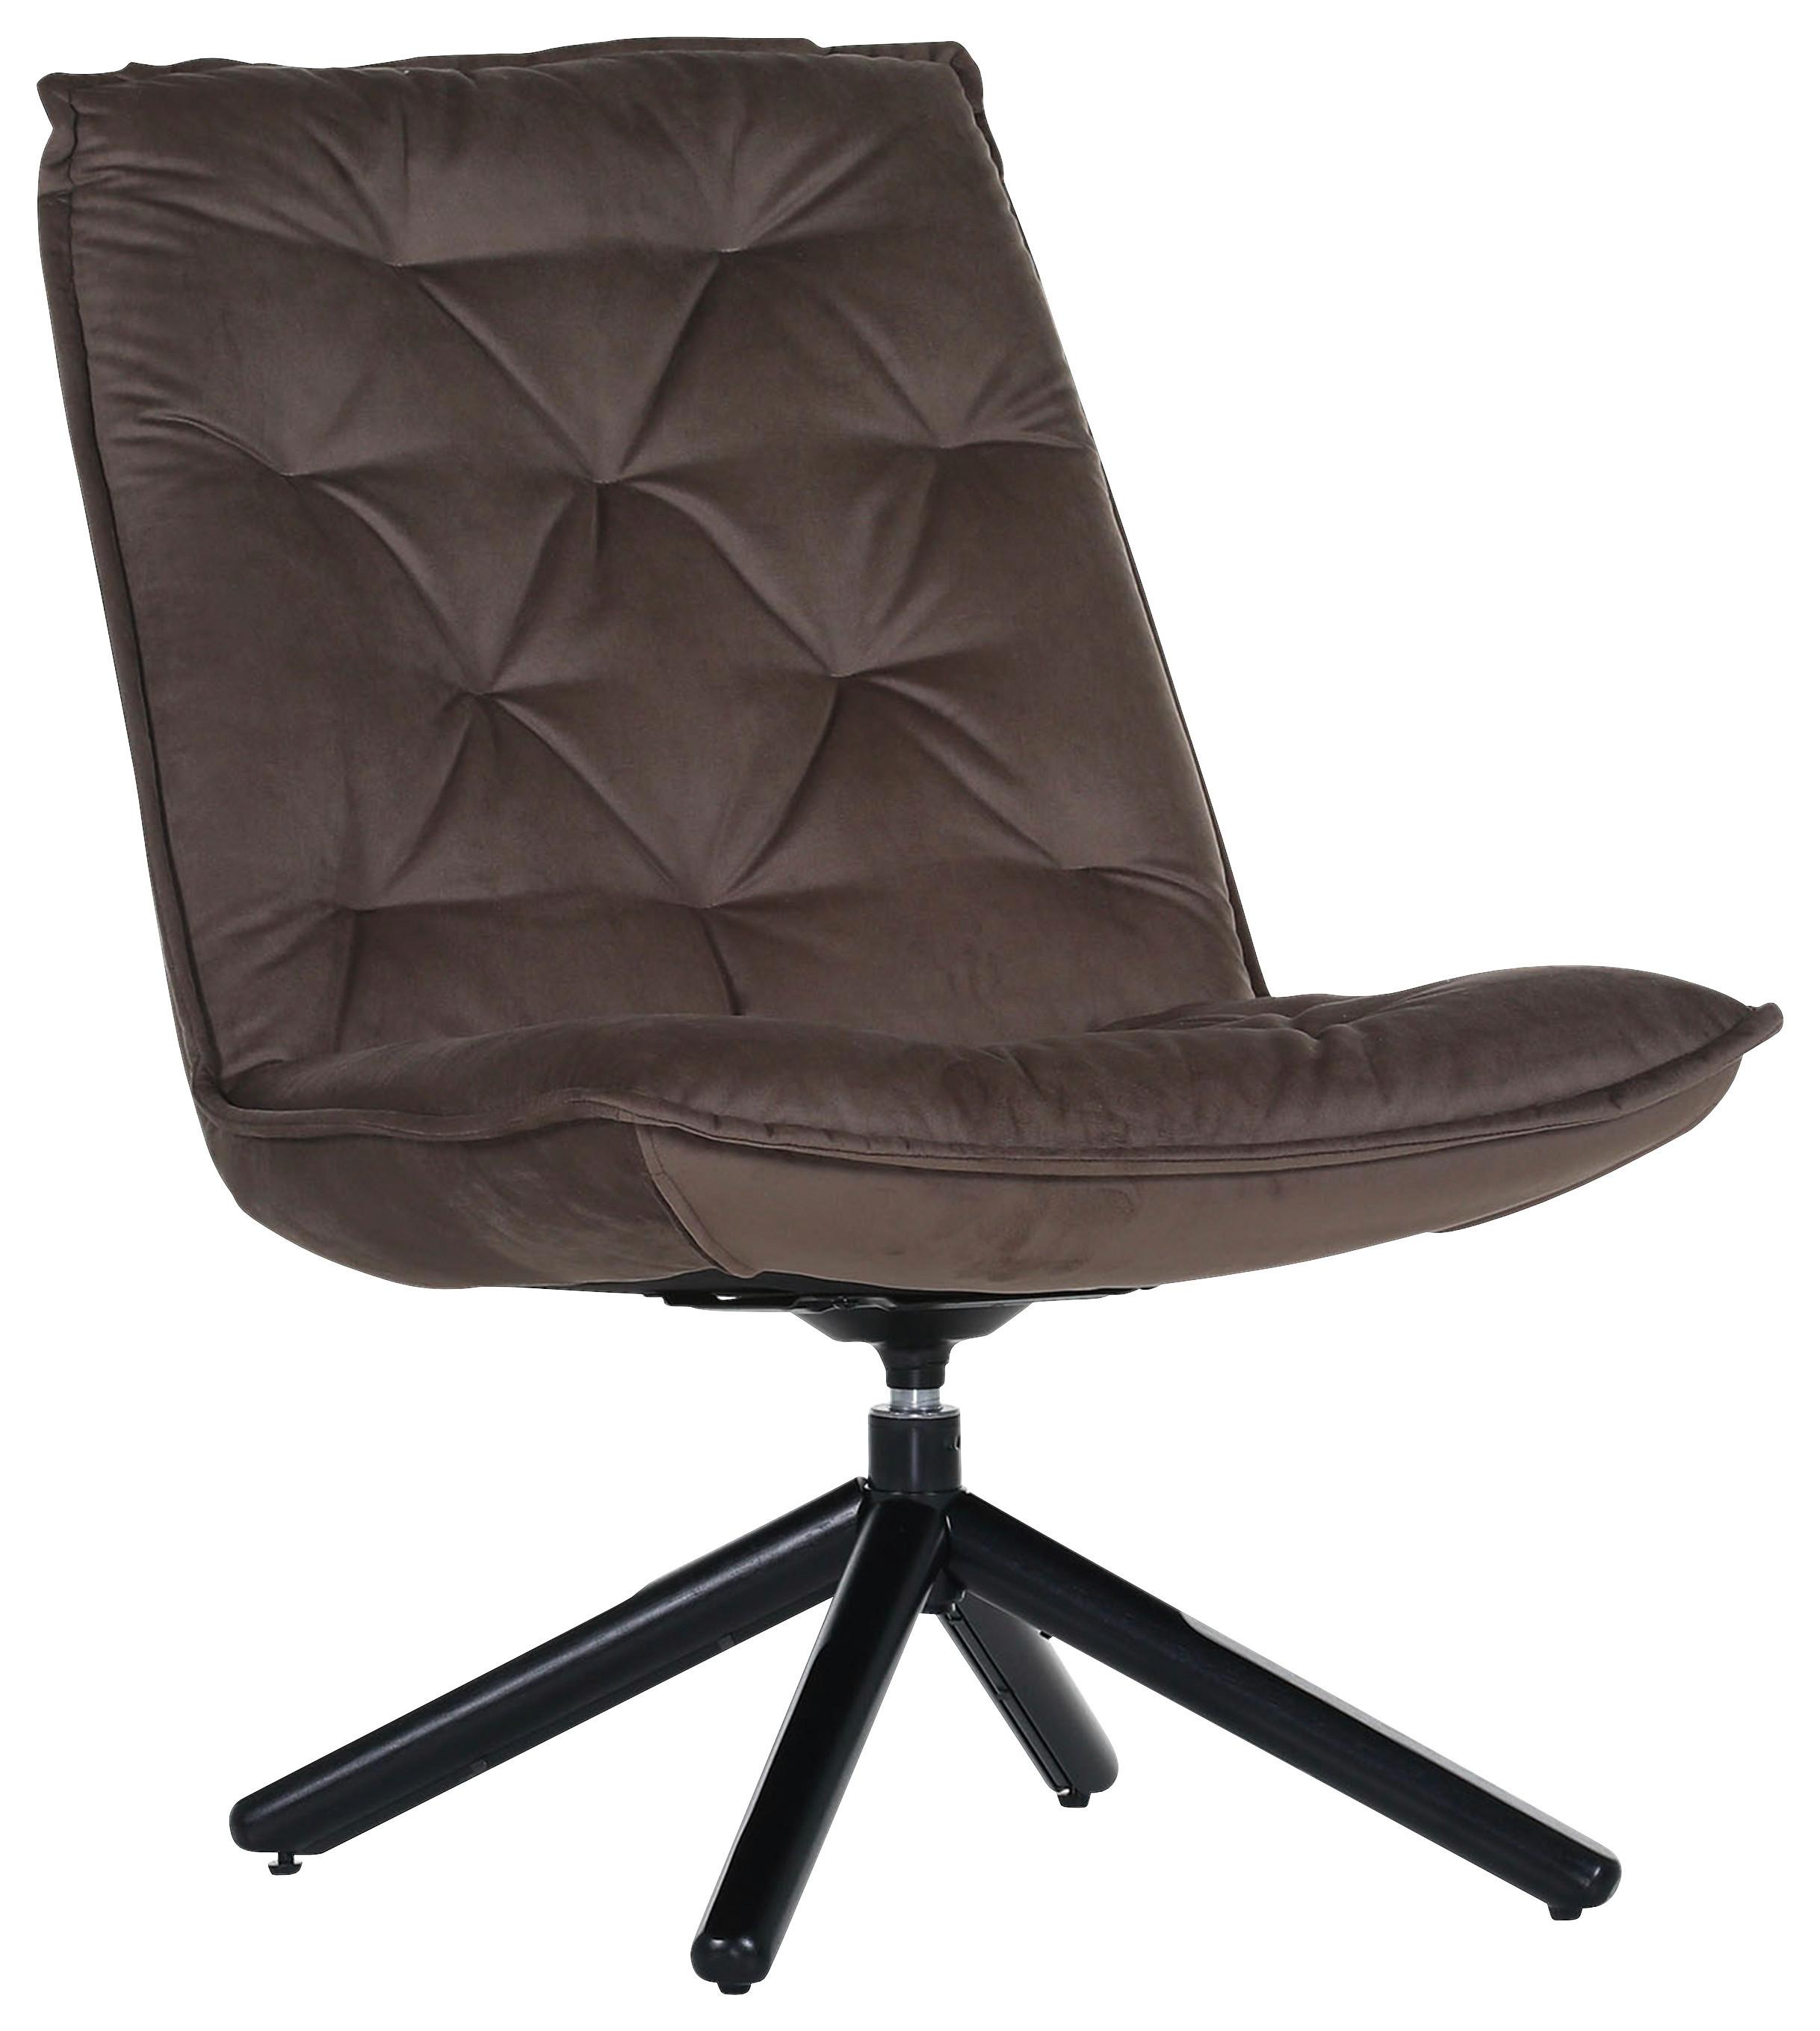 Fotelja Chill - smeđa/crna, Modern, tekstil/metal (70/96/80cm) - Modern Living